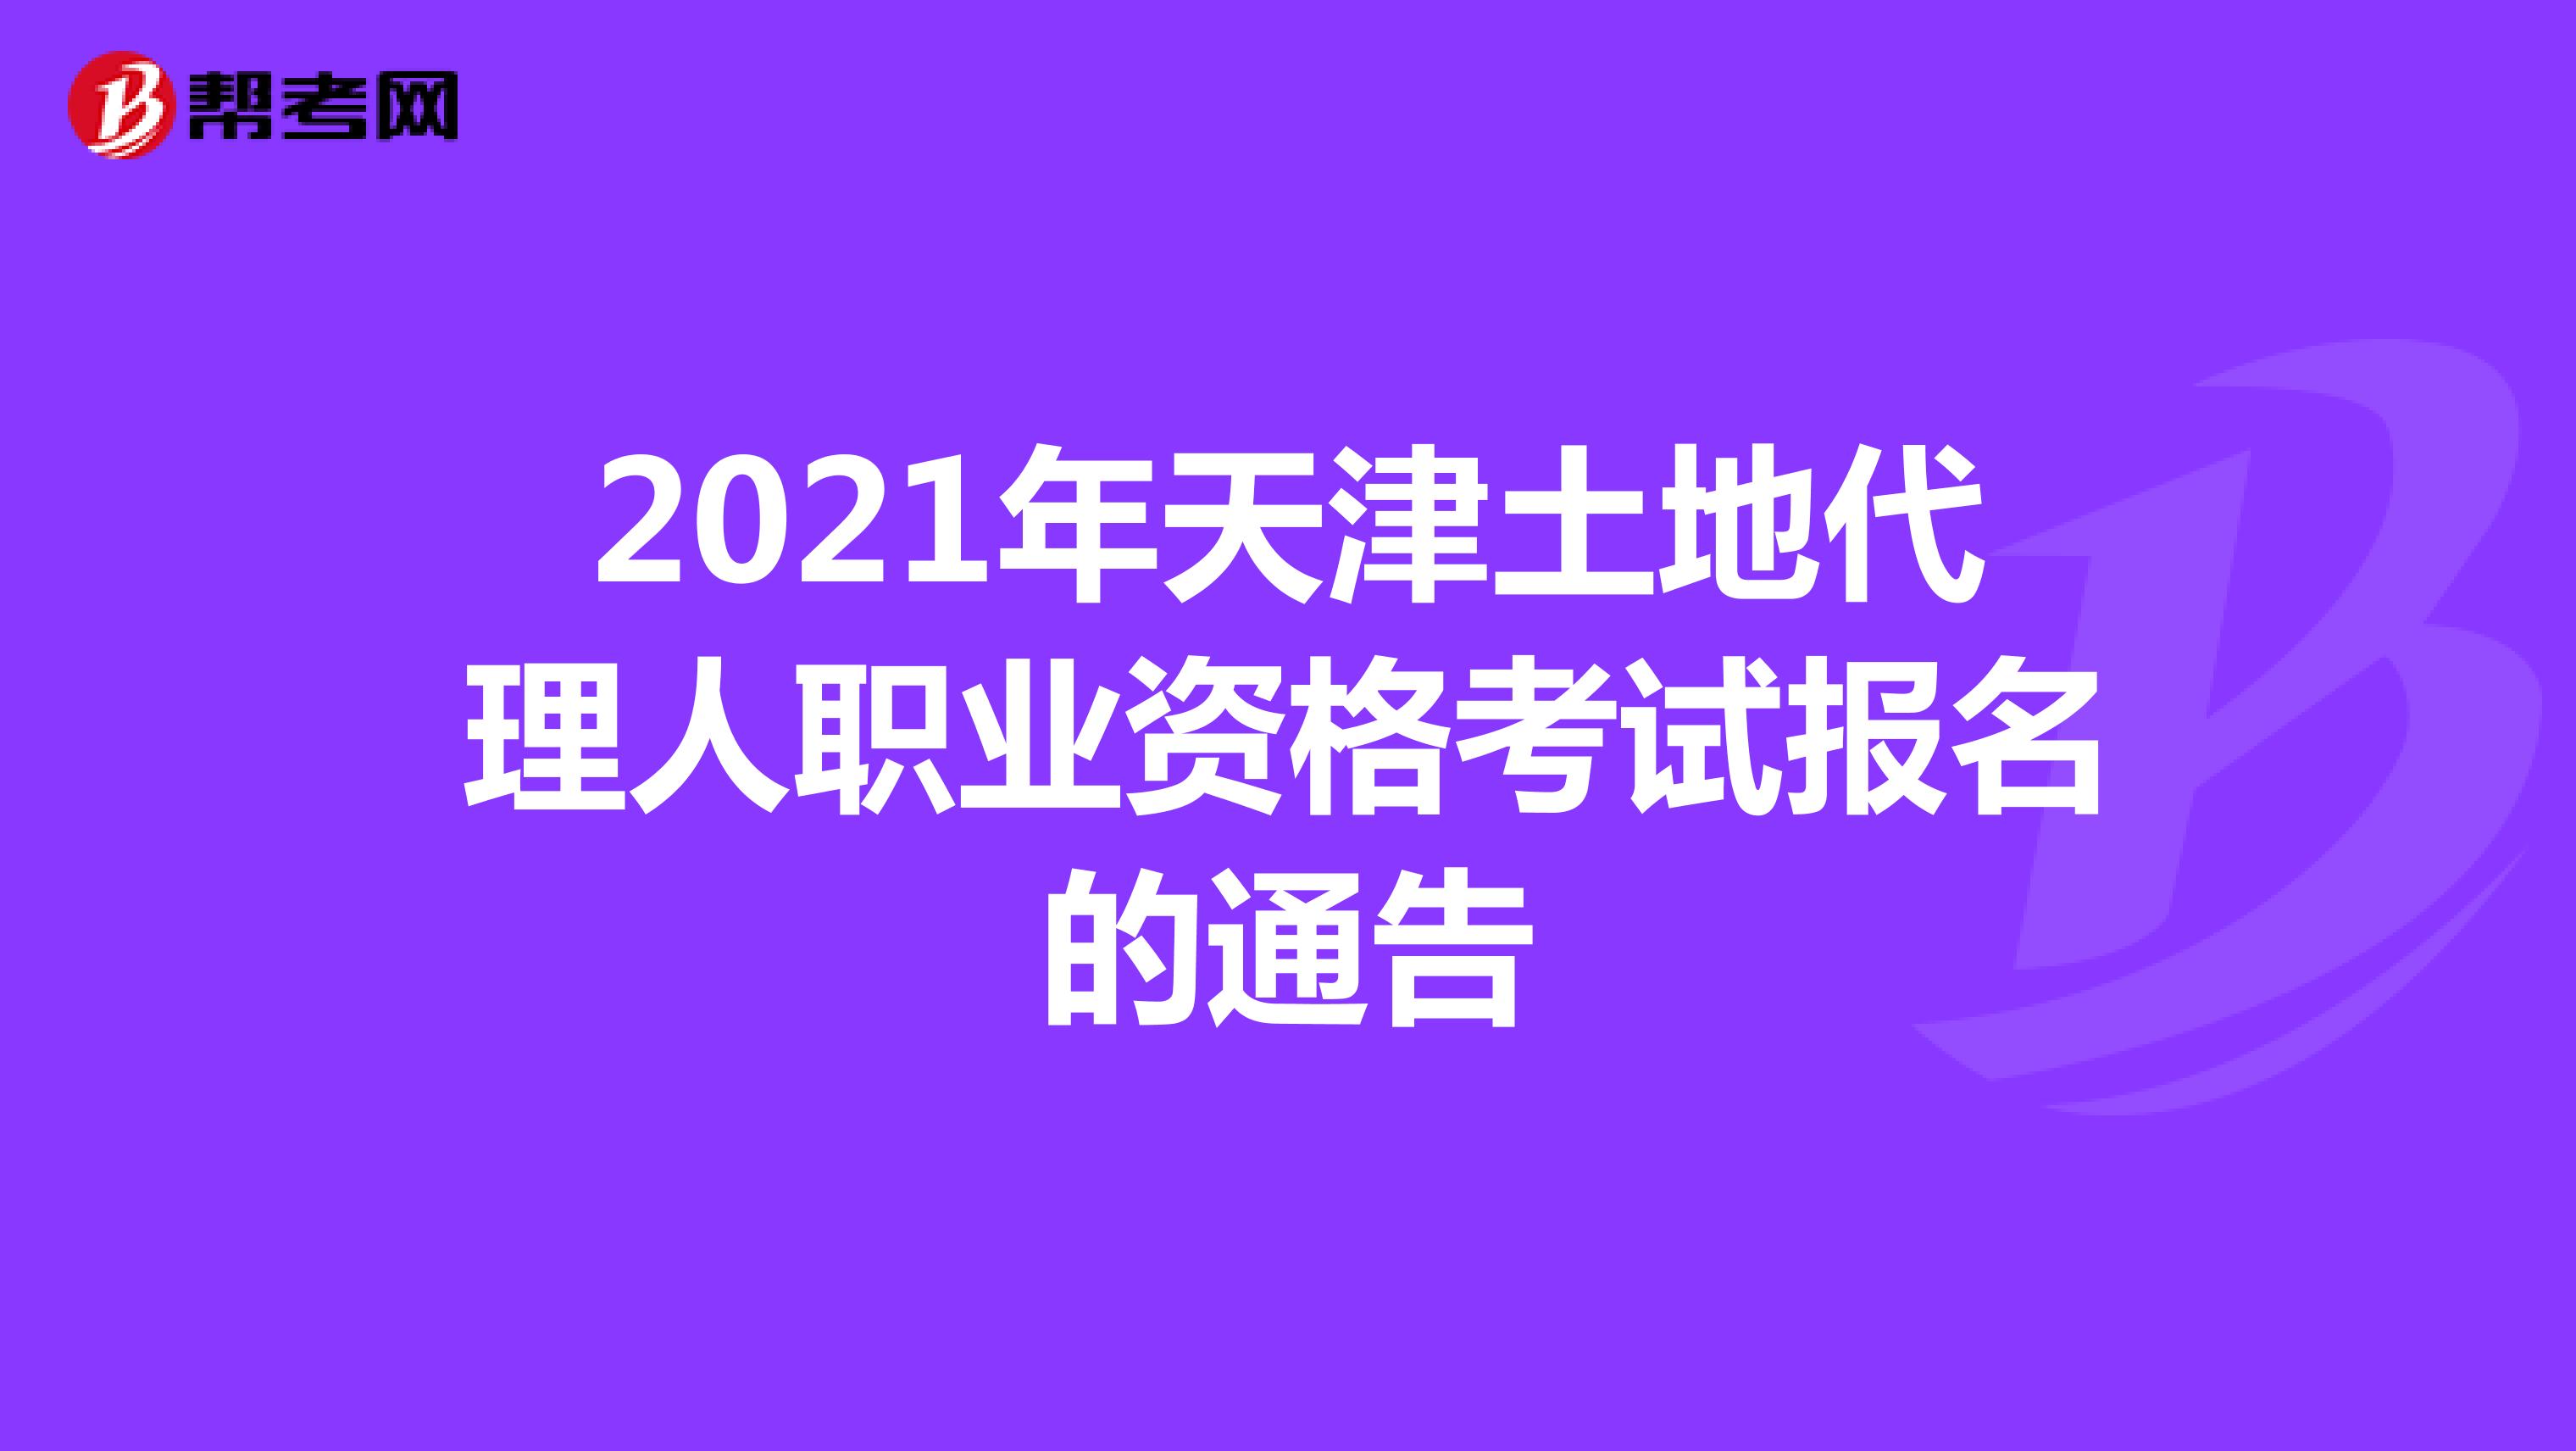 提醒：2021年天津土地代理人职业资格考试报名的通告